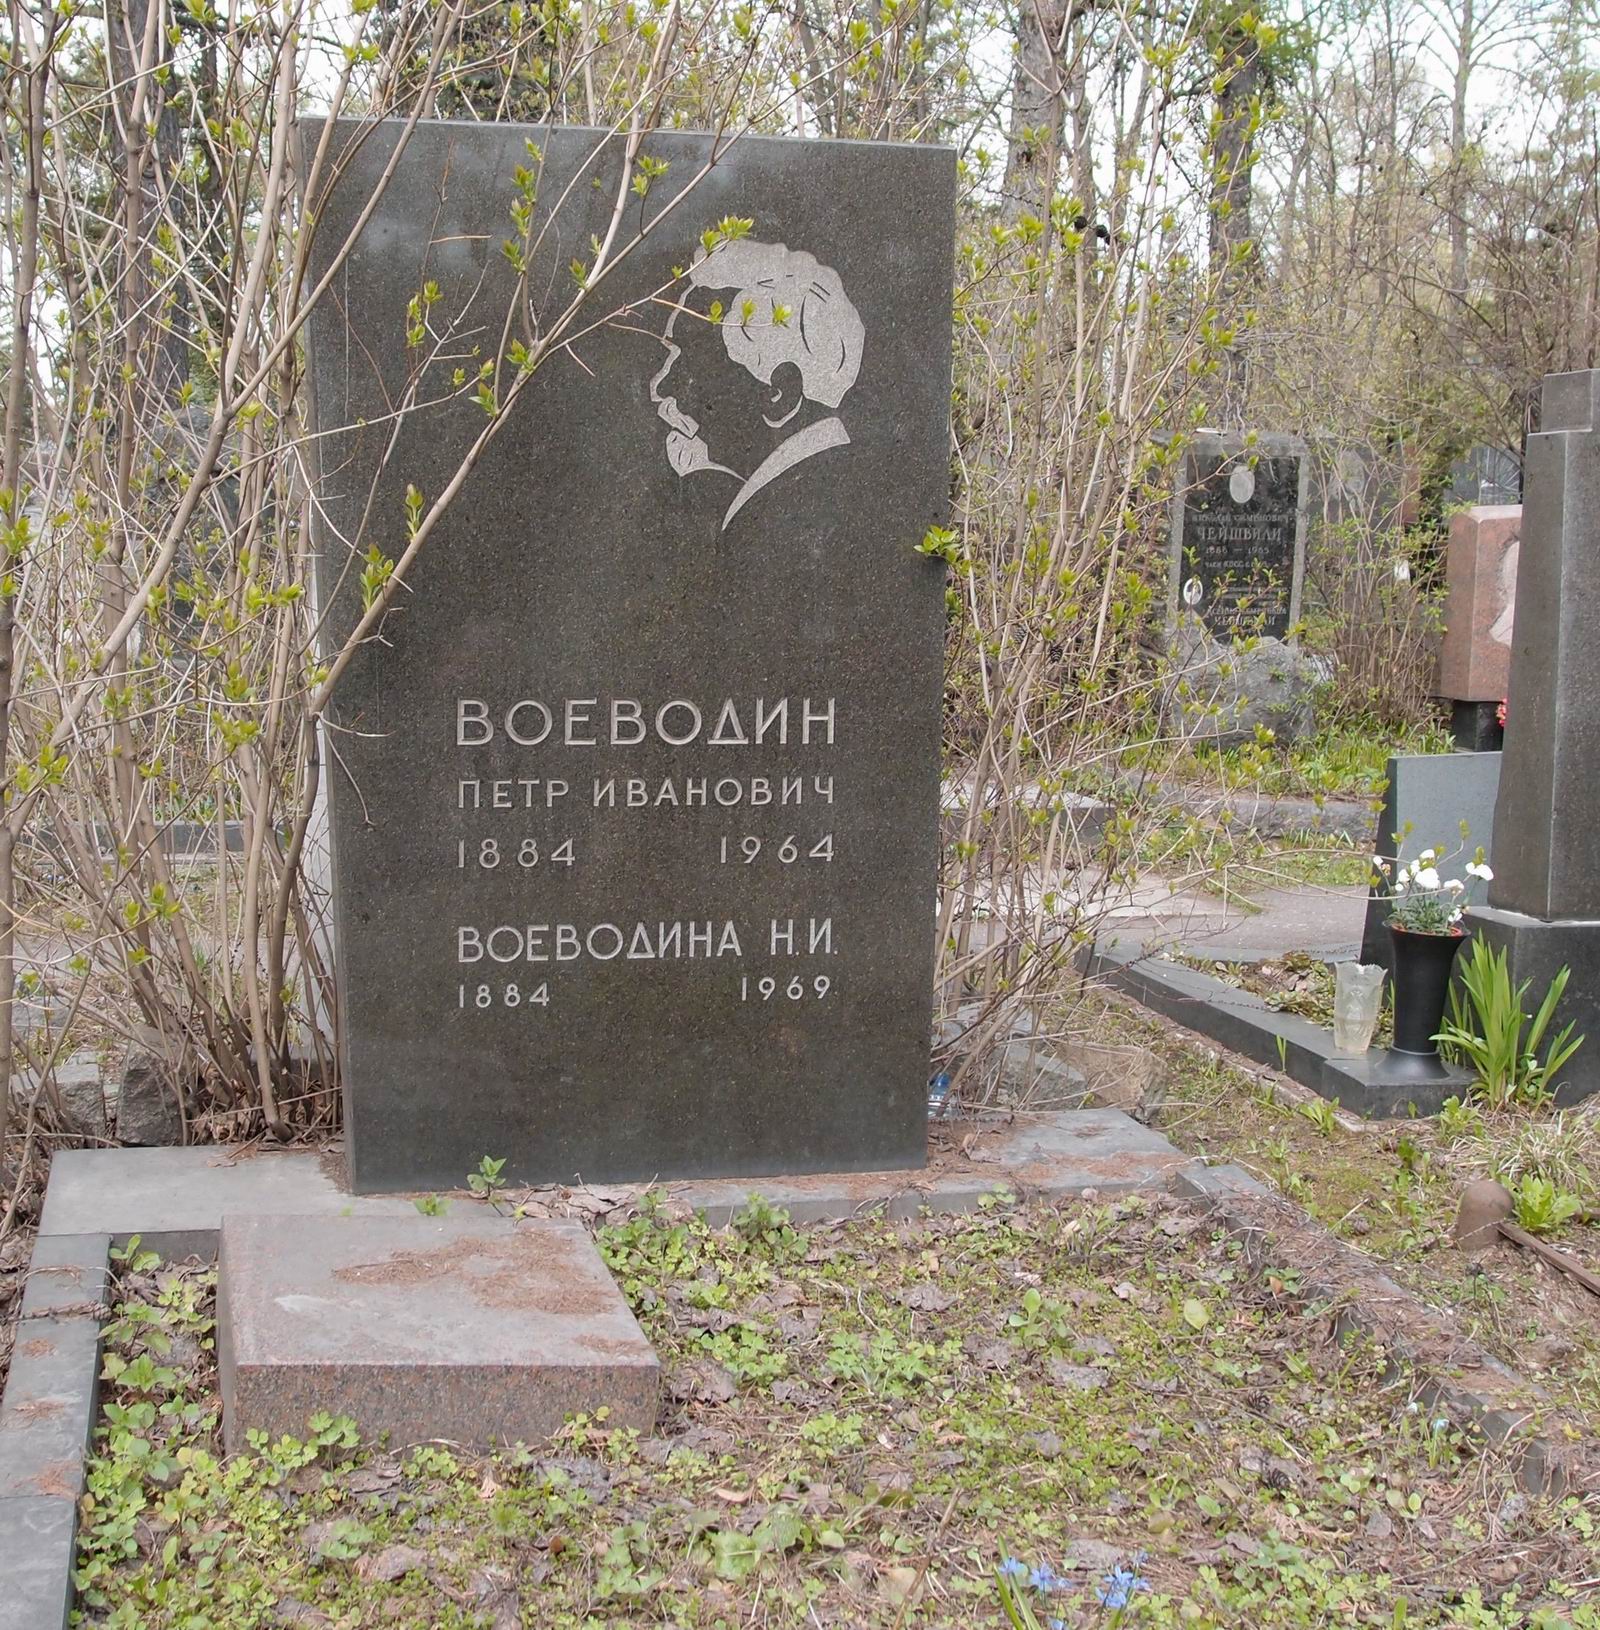 Памятник на могиле Воеводина П.И. (1884-1964), на Новодевичьем кладбище (6-13-12).